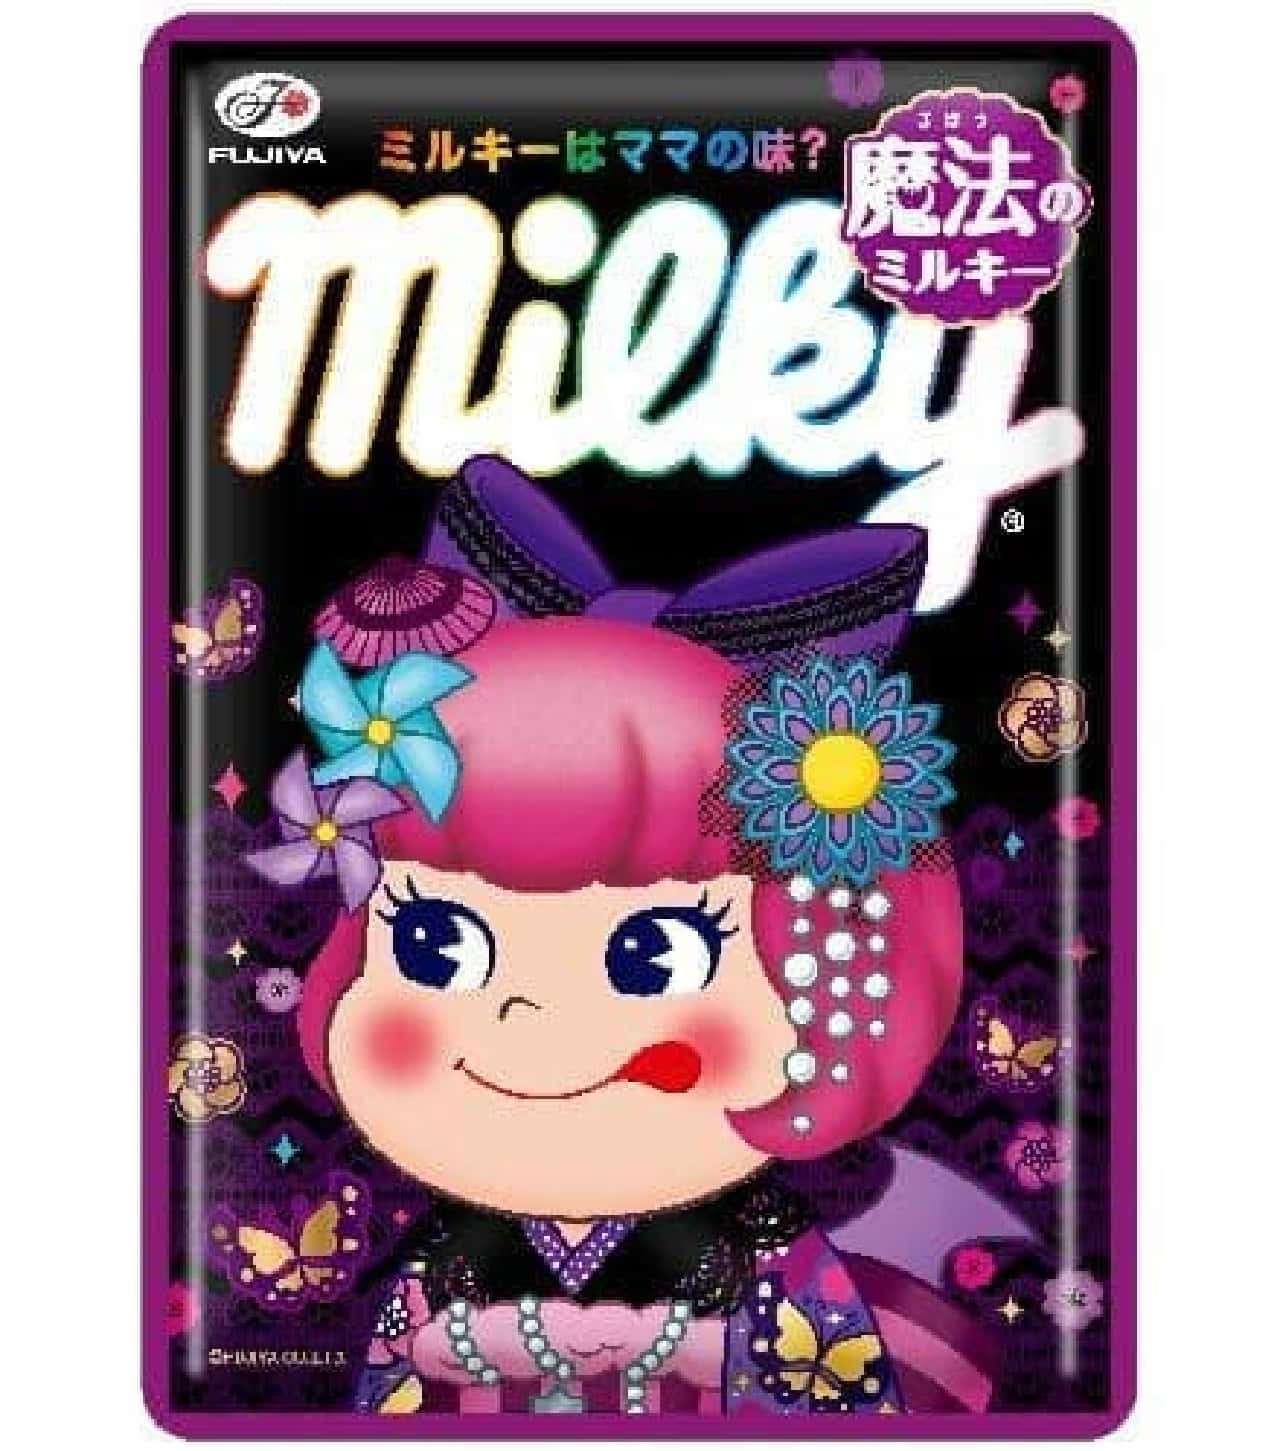 Fujiya magical milky